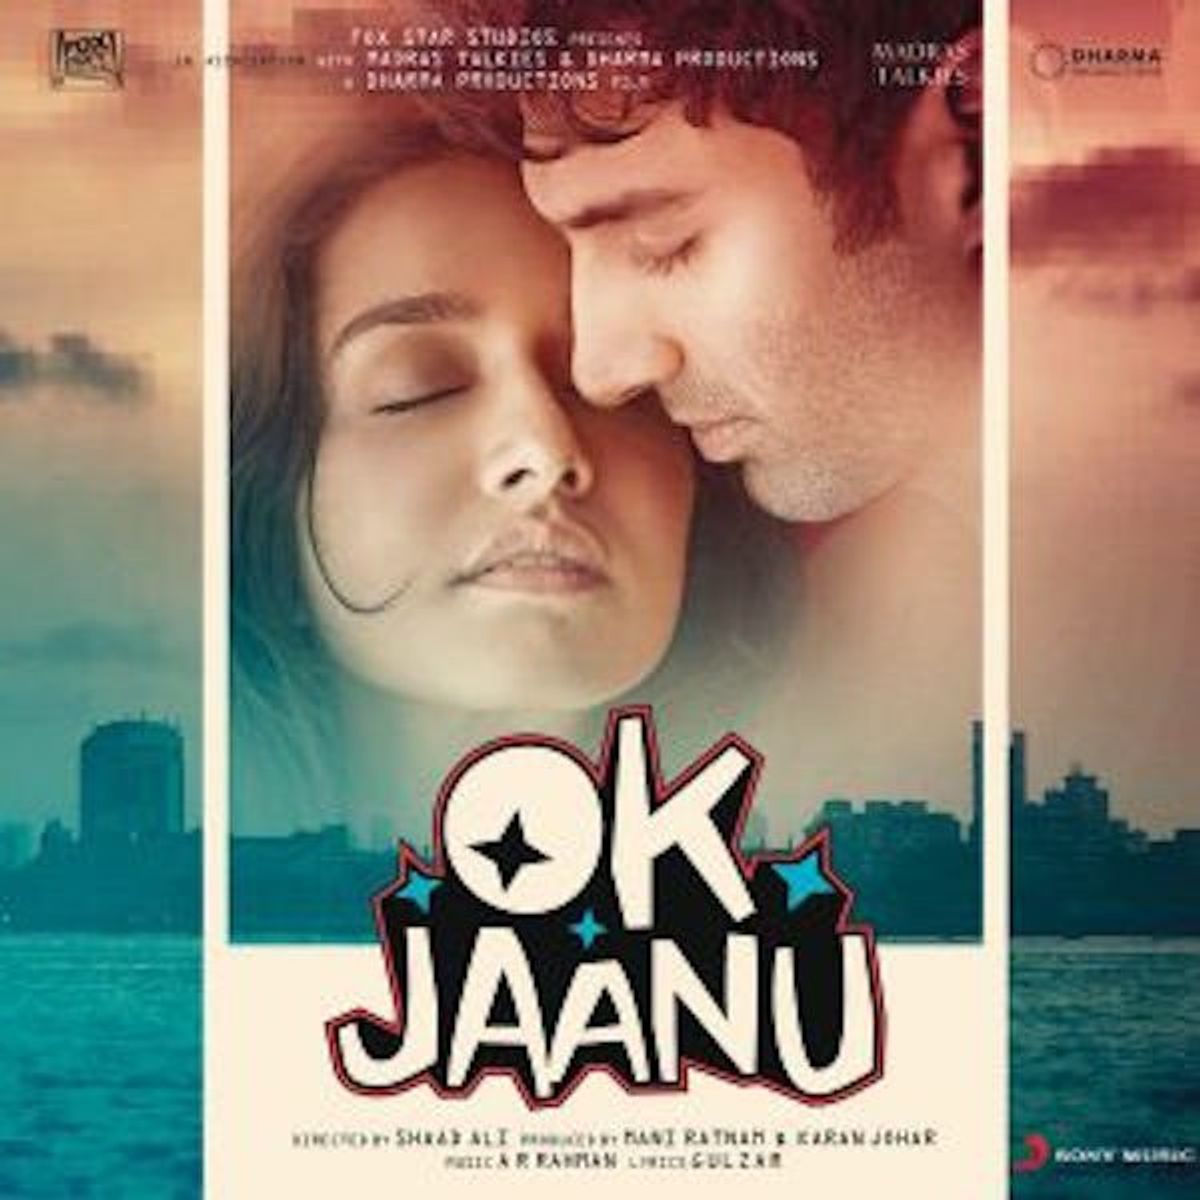 Music Review: OK Jaanu